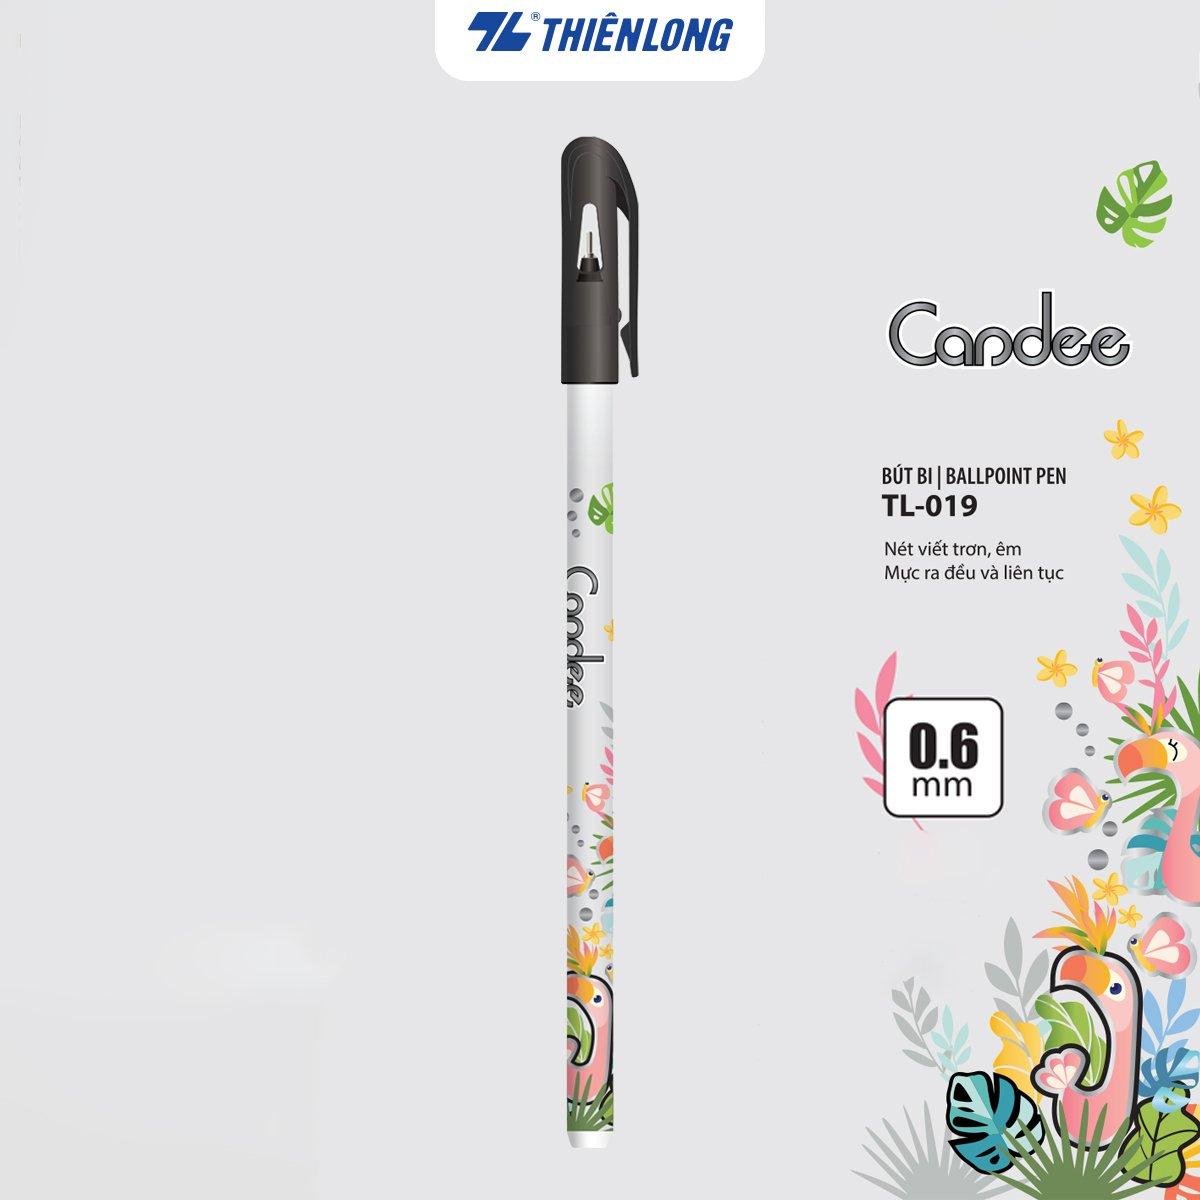 Combo 20 Bút bi - Ballpoint Pen Candee Thiên Long TL-019